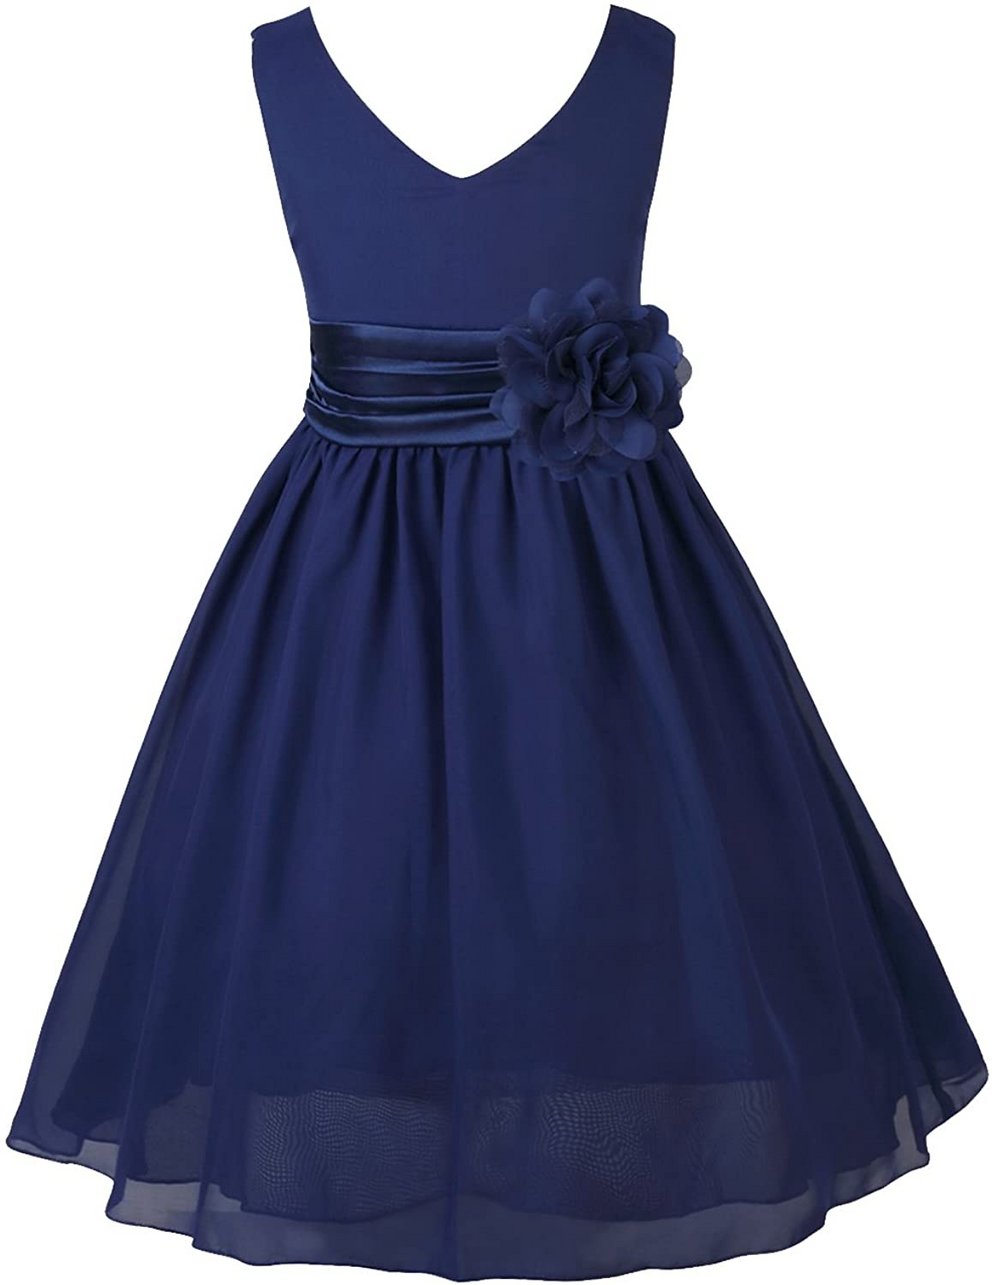 Taufkleider Mädchen: Wundervolles Prinzessinnenkleid in dunkelblau